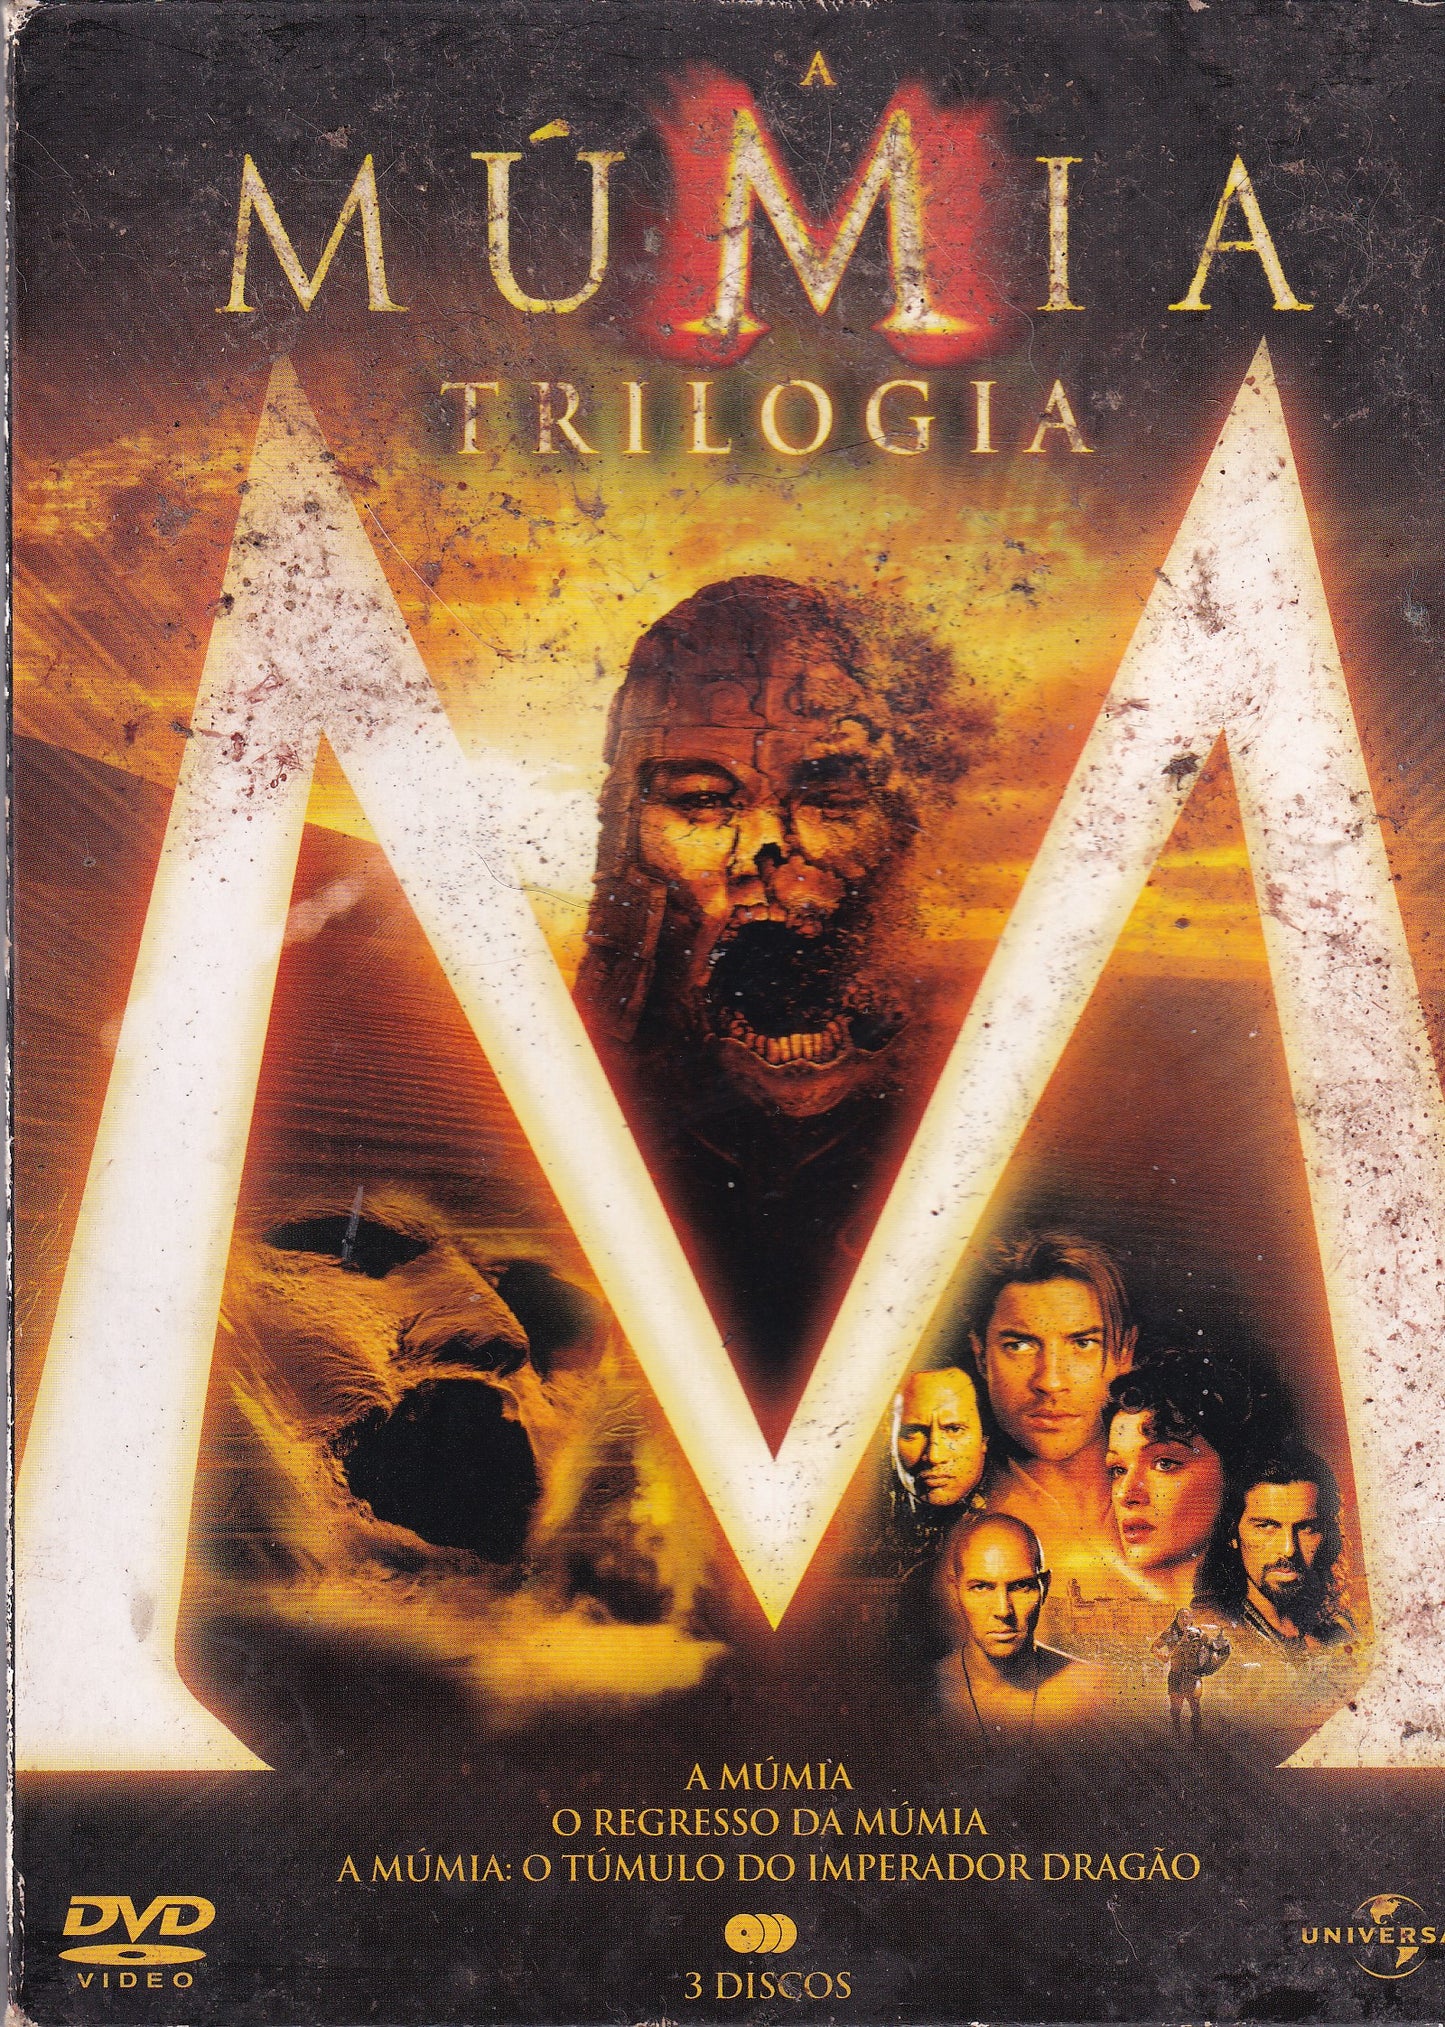 DVD A Múmia -Trilogia-  3 Discos - USADO